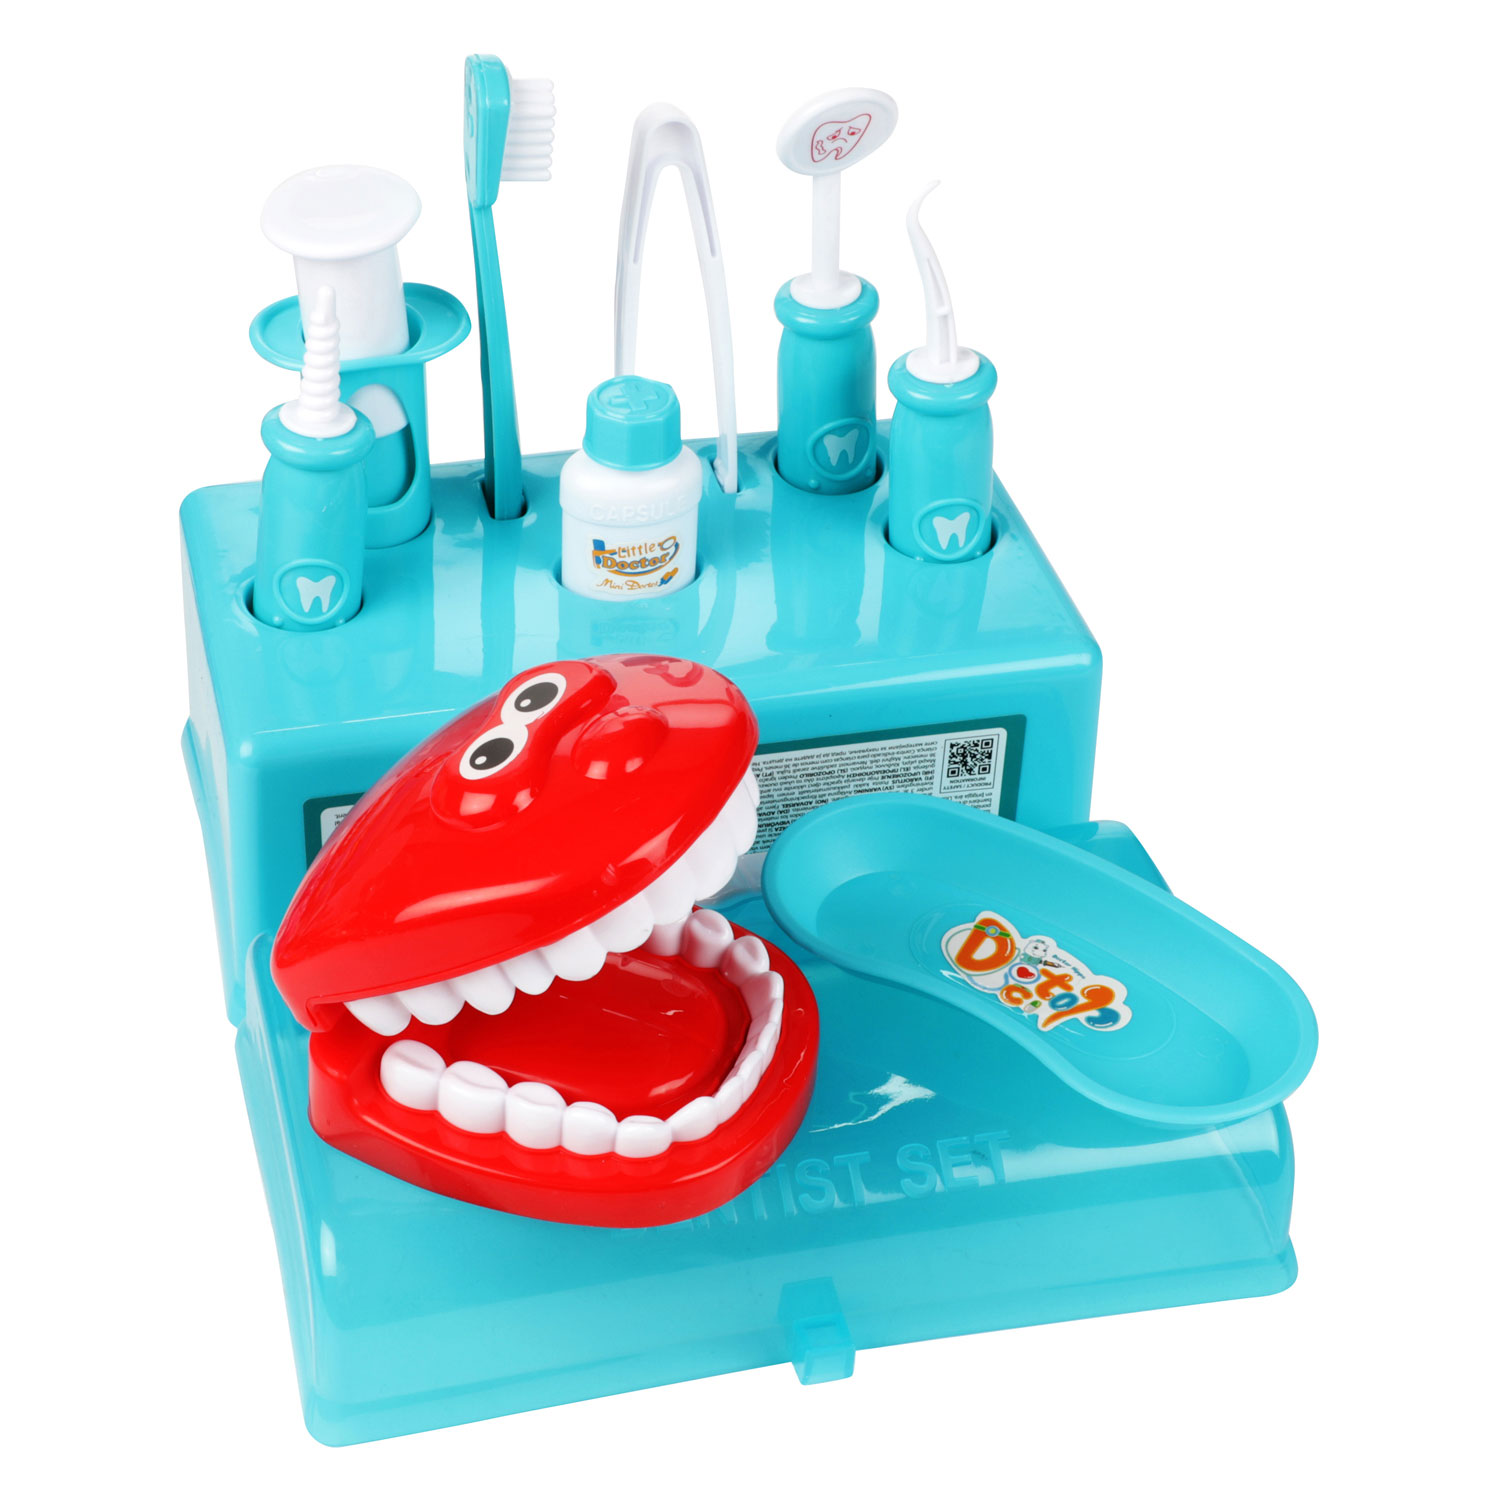 Jouet dentiste enfant - Jeu dentiste enfant JANOD